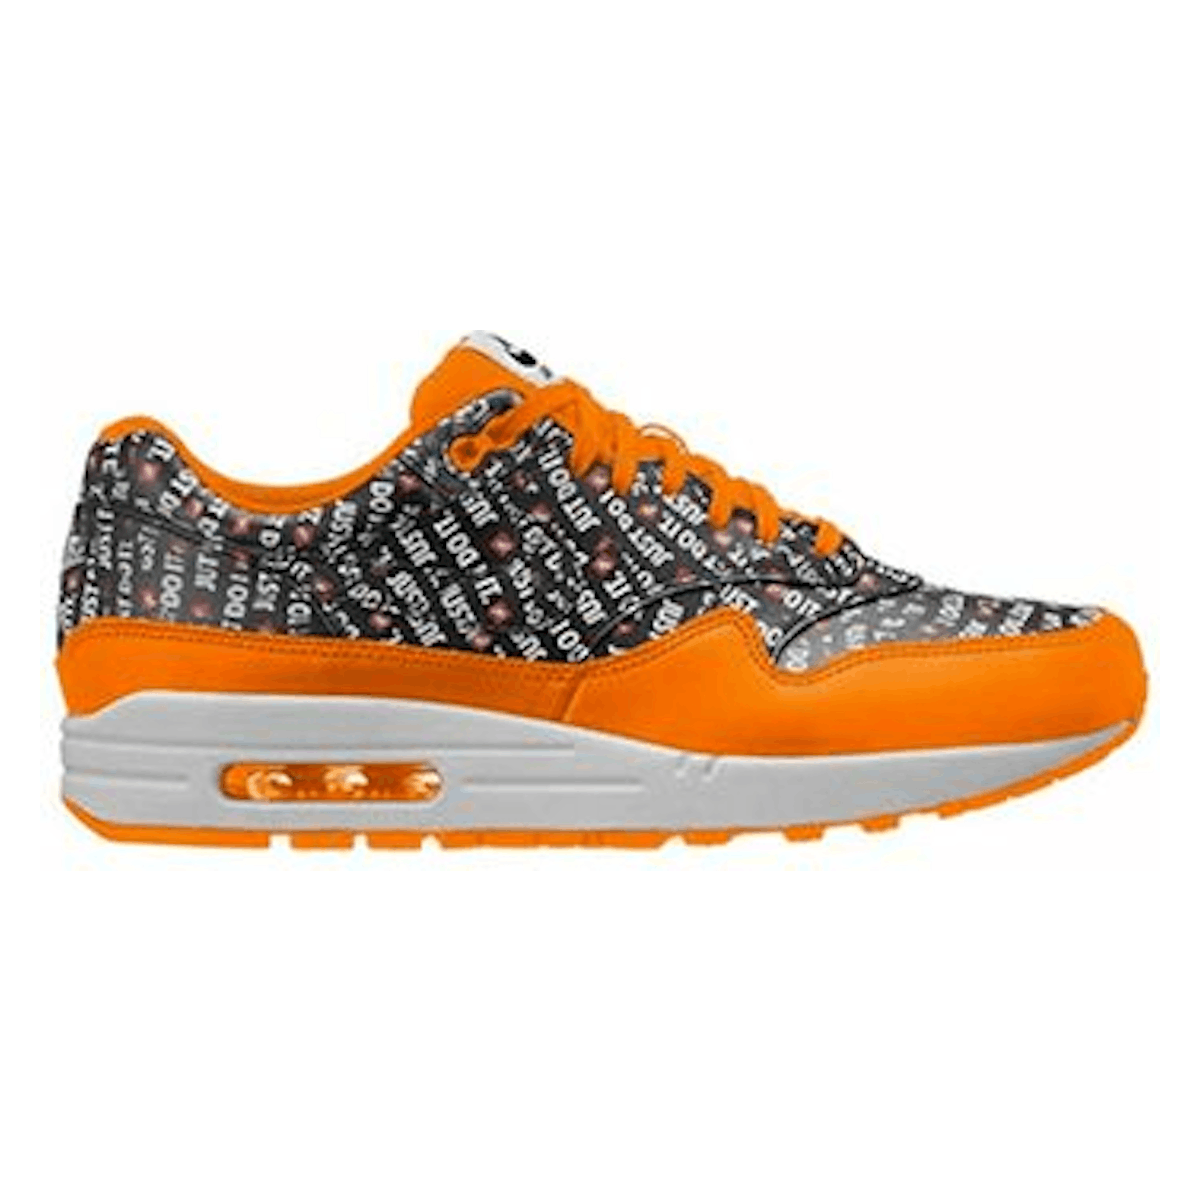 Nike Air Max 1 Premium "Just Do It" Orange